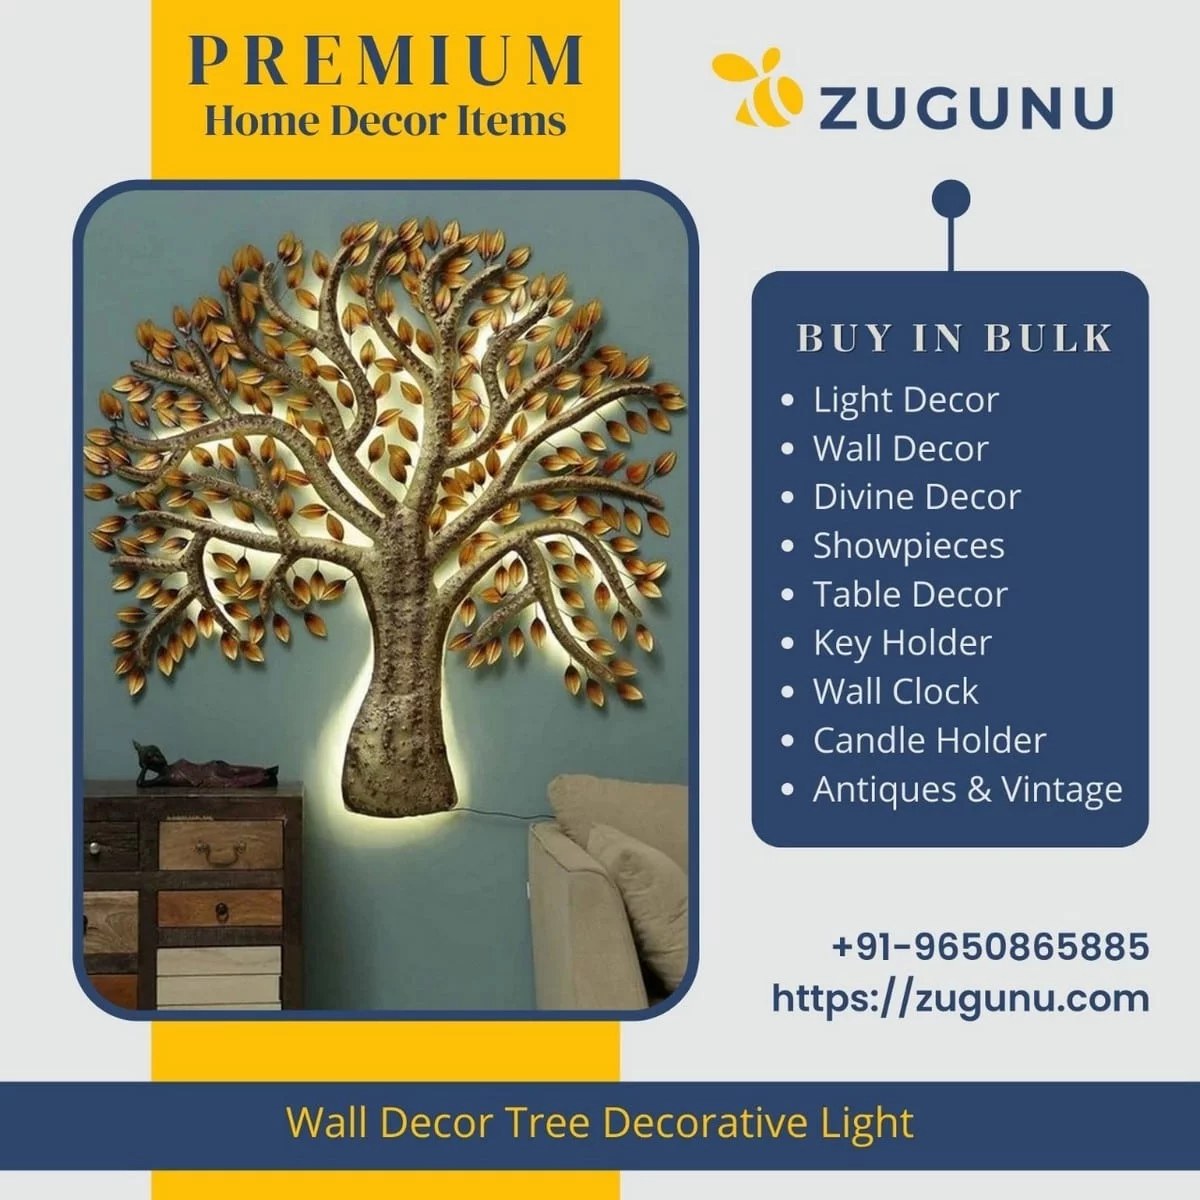 Buy Exclusive Handicrafts At Zugunu Design A Home You Love